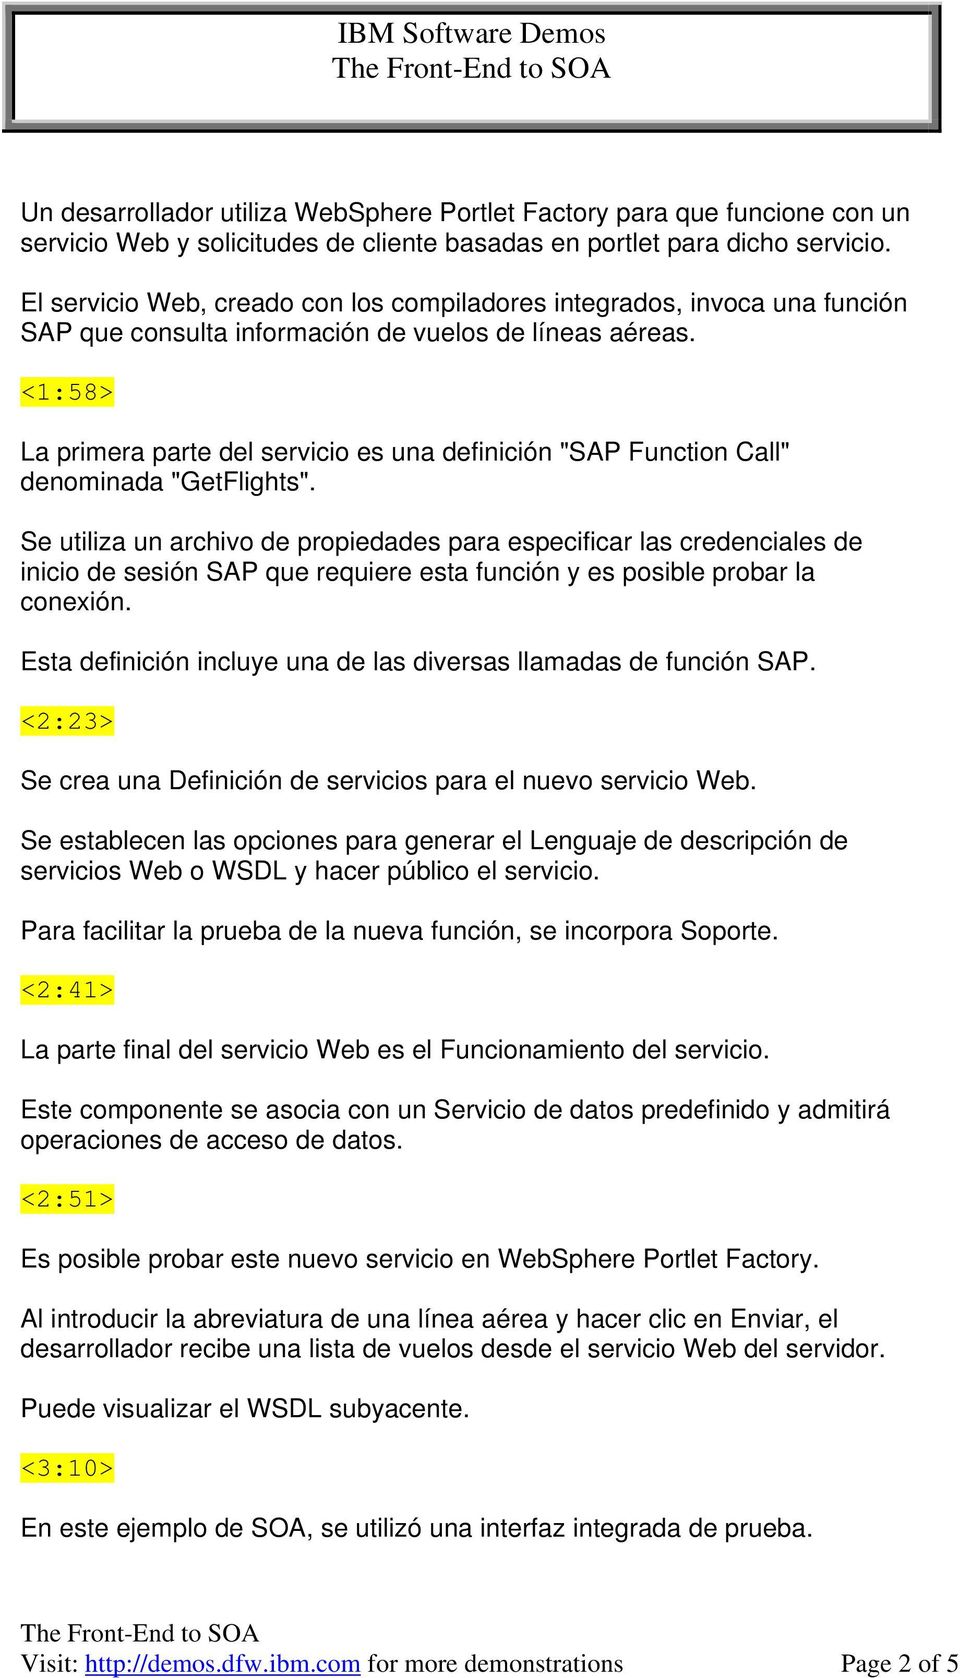 <1:58> La primera parte del servicio es una definición "SAP Function Call" denominada "GetFlights".